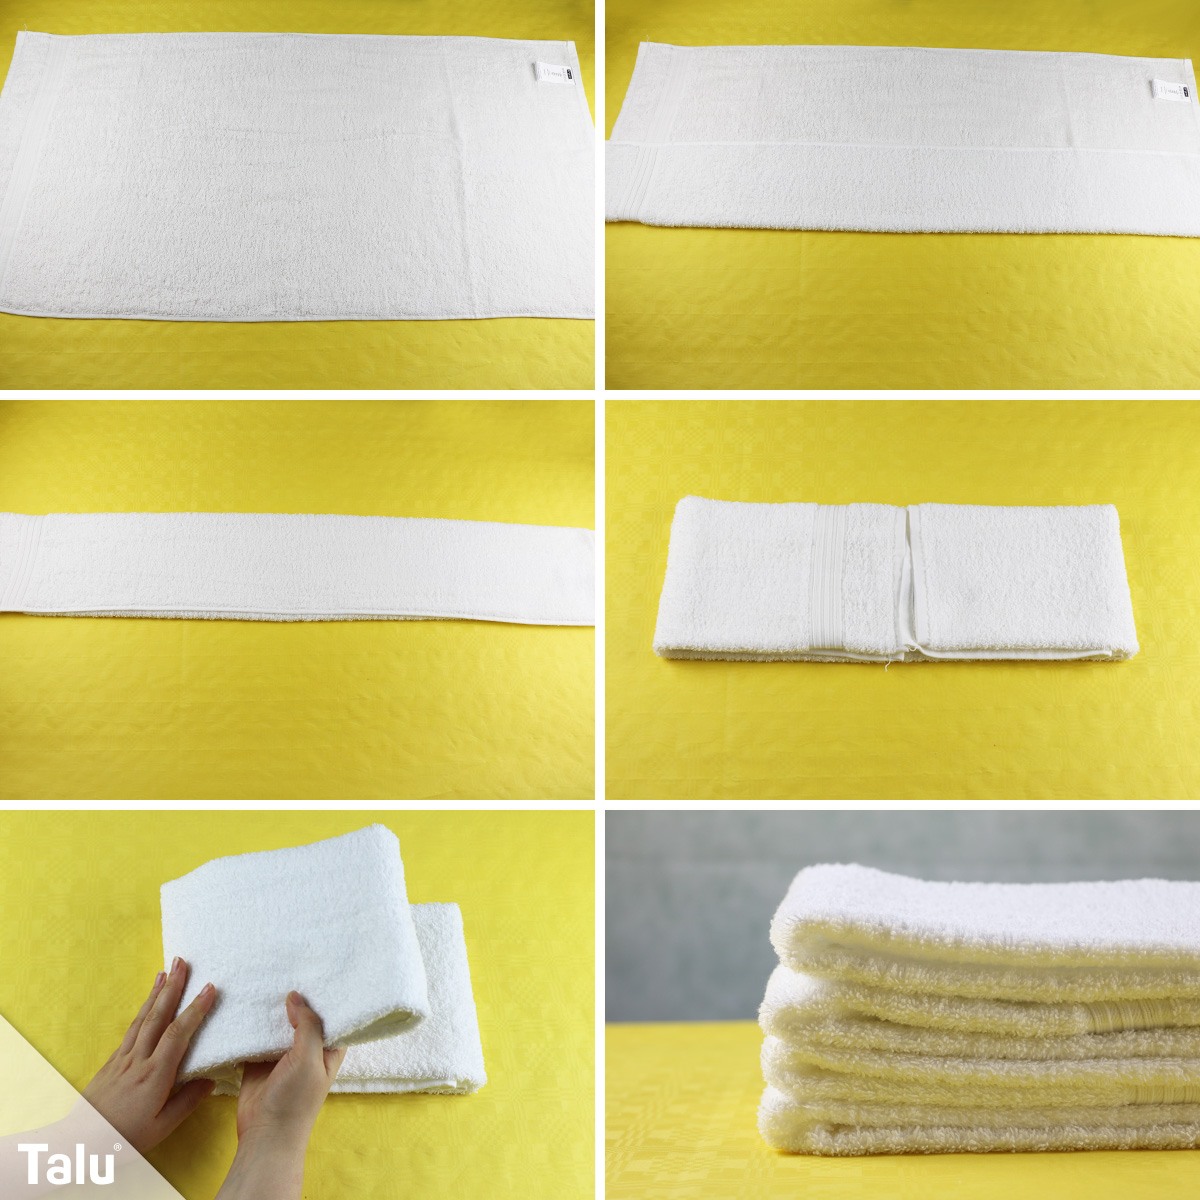 Заворачиваем полотенце. Складываем полотенца красиво. Компактно сложить полотенца. Красиво сложить полотенце. Компактное складывание полотенца.